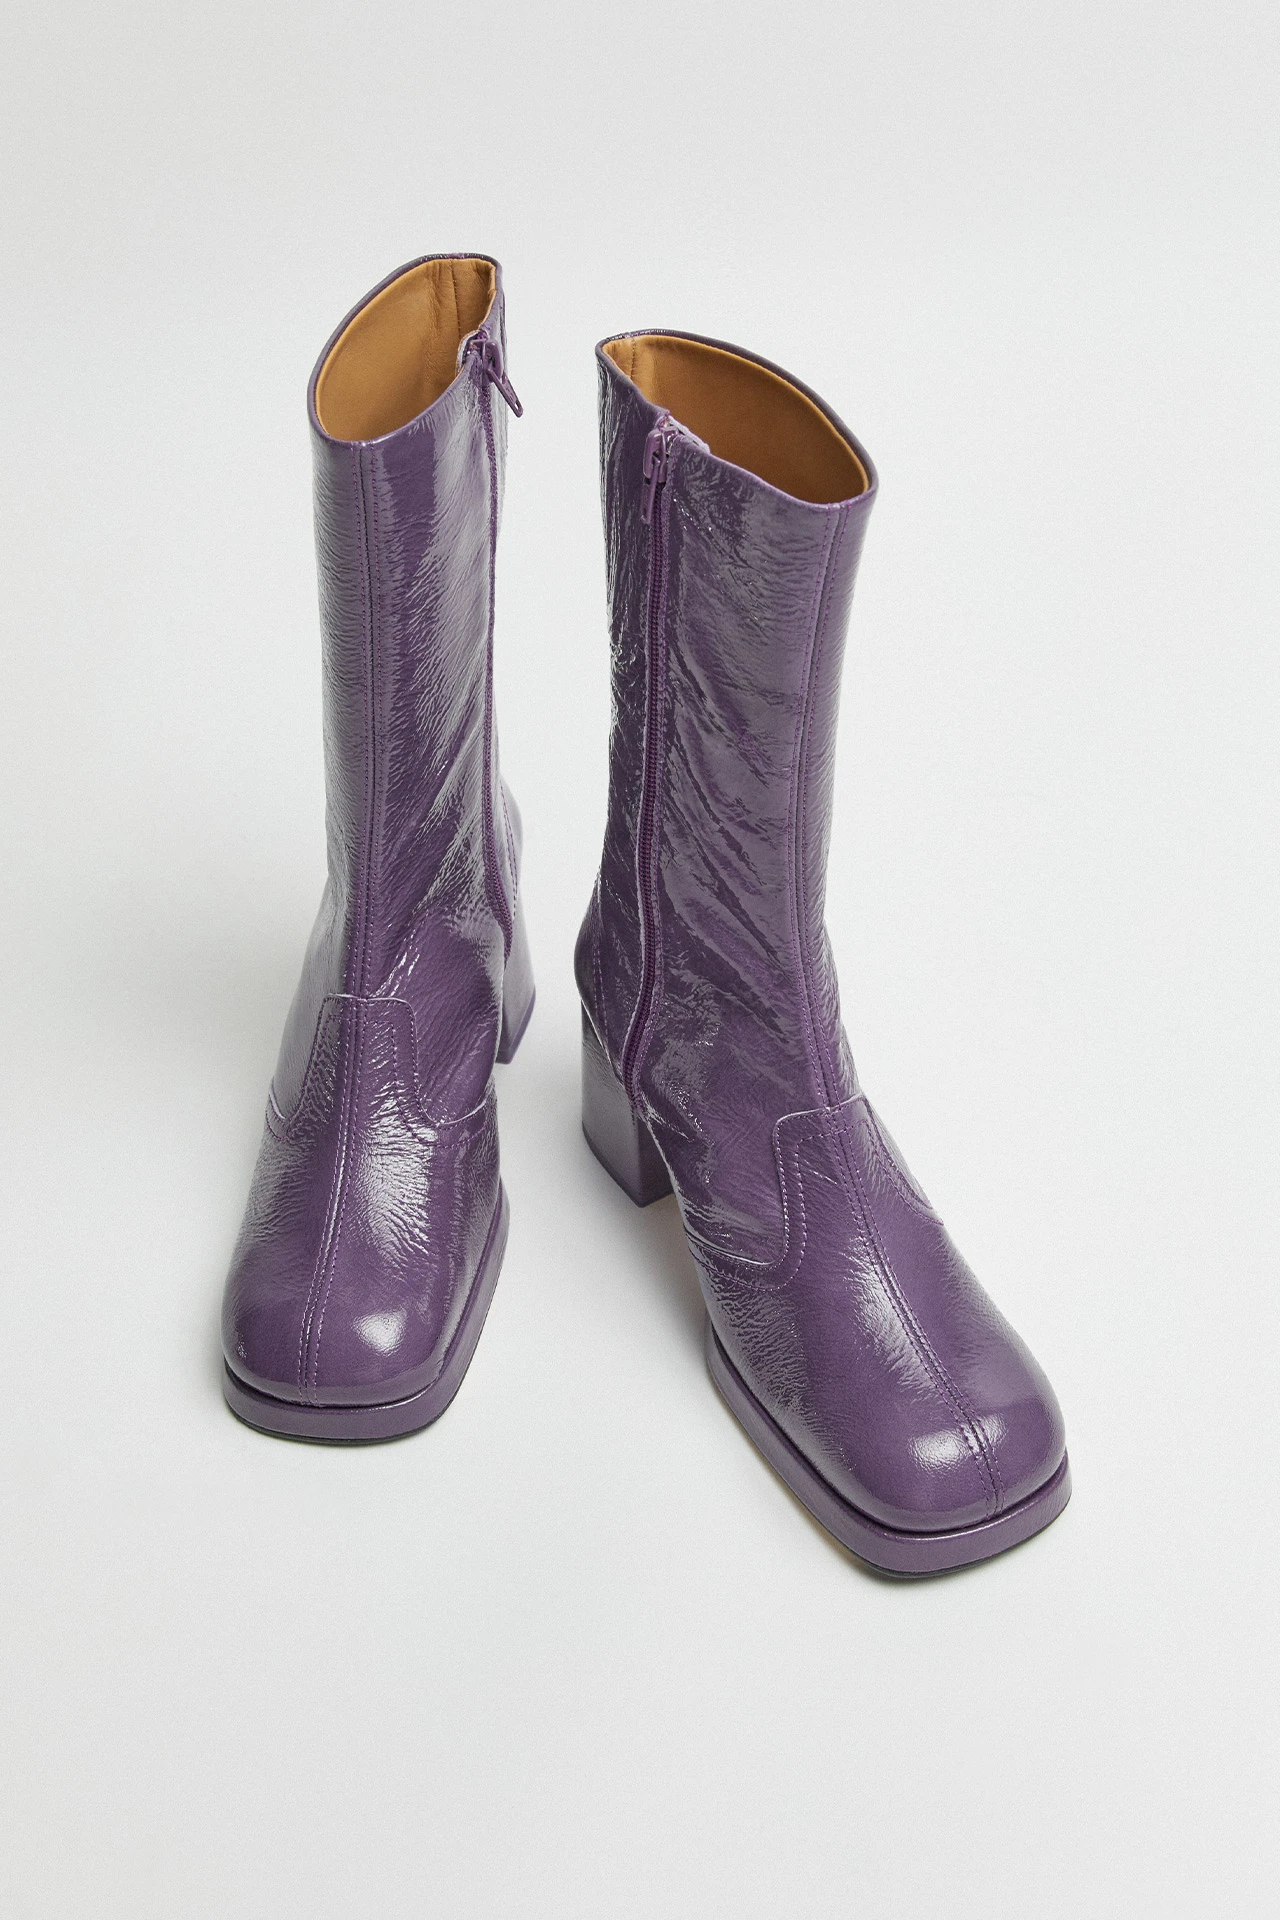 Miista-cass-purple-boots-04